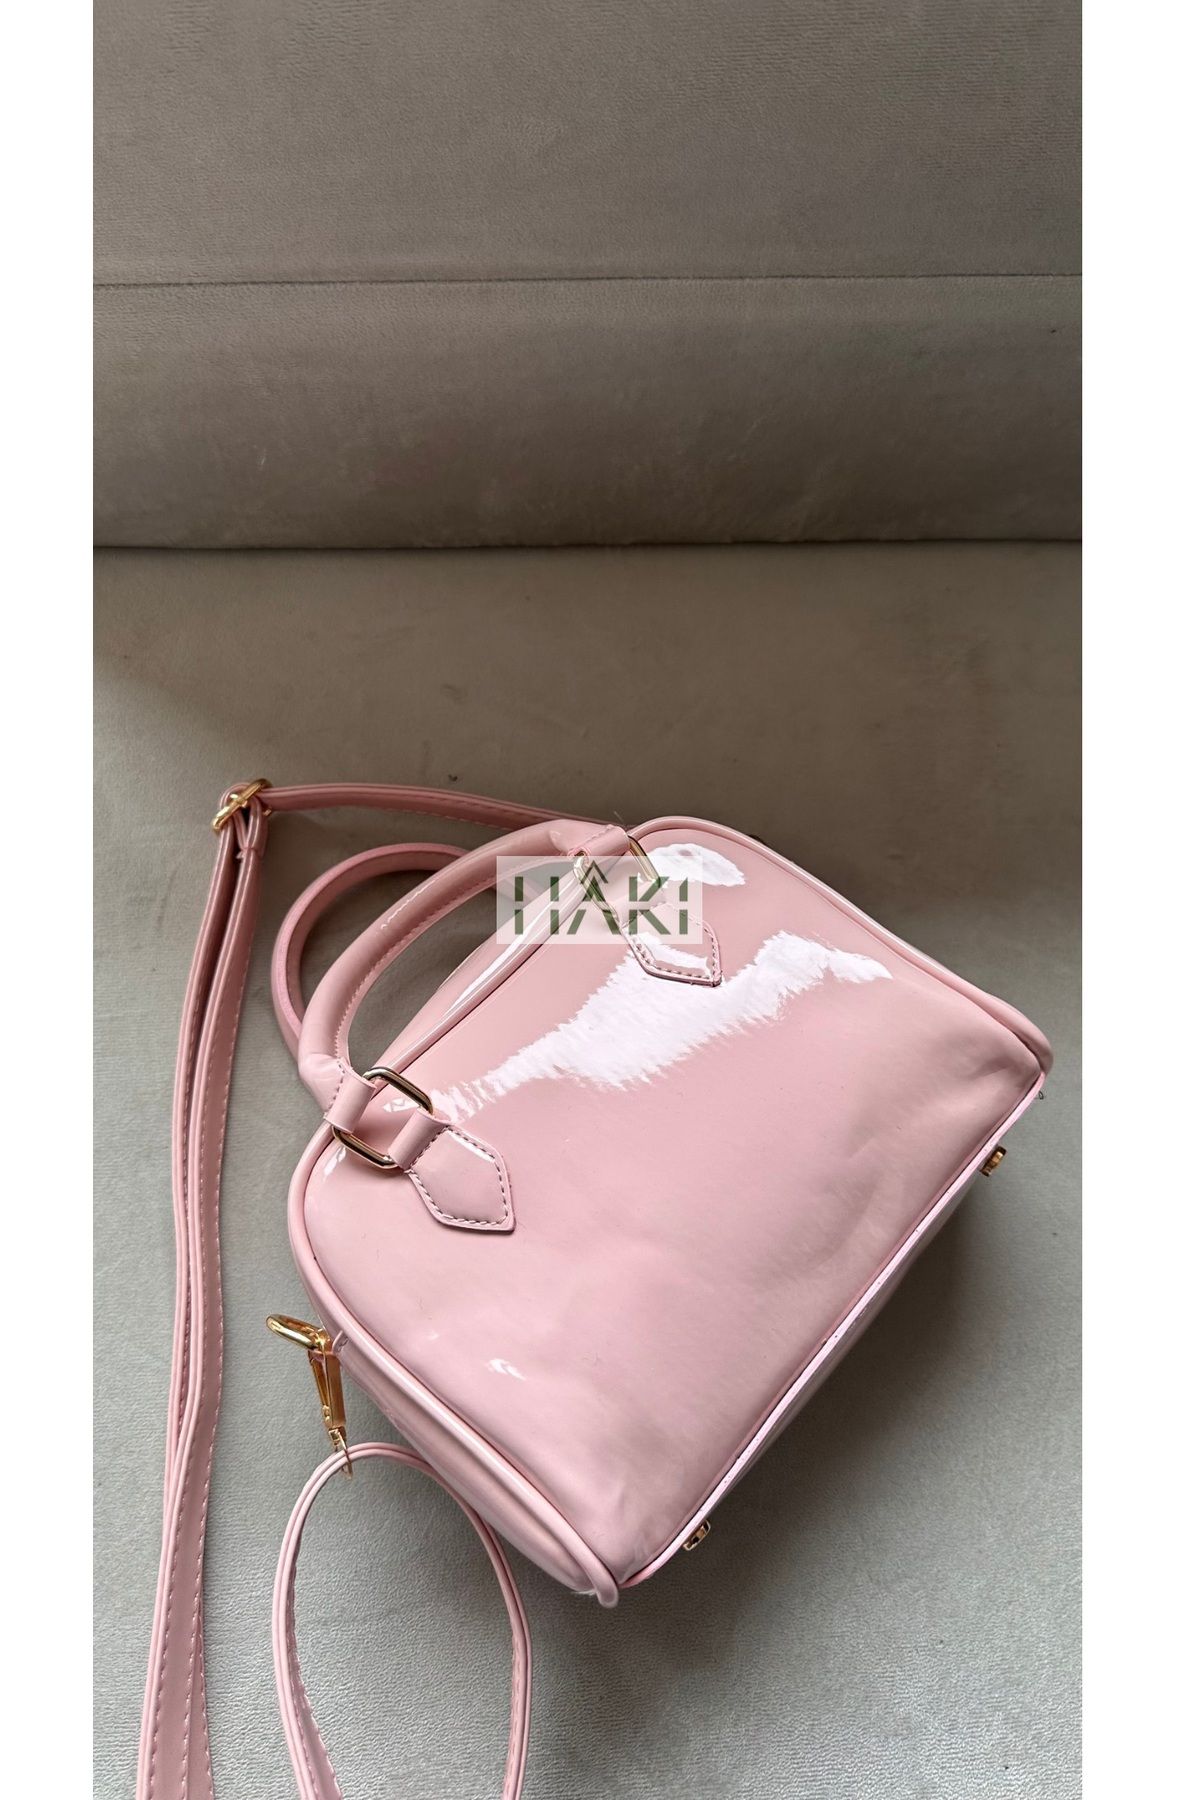 Boutiquehaki Fam Mini Bag